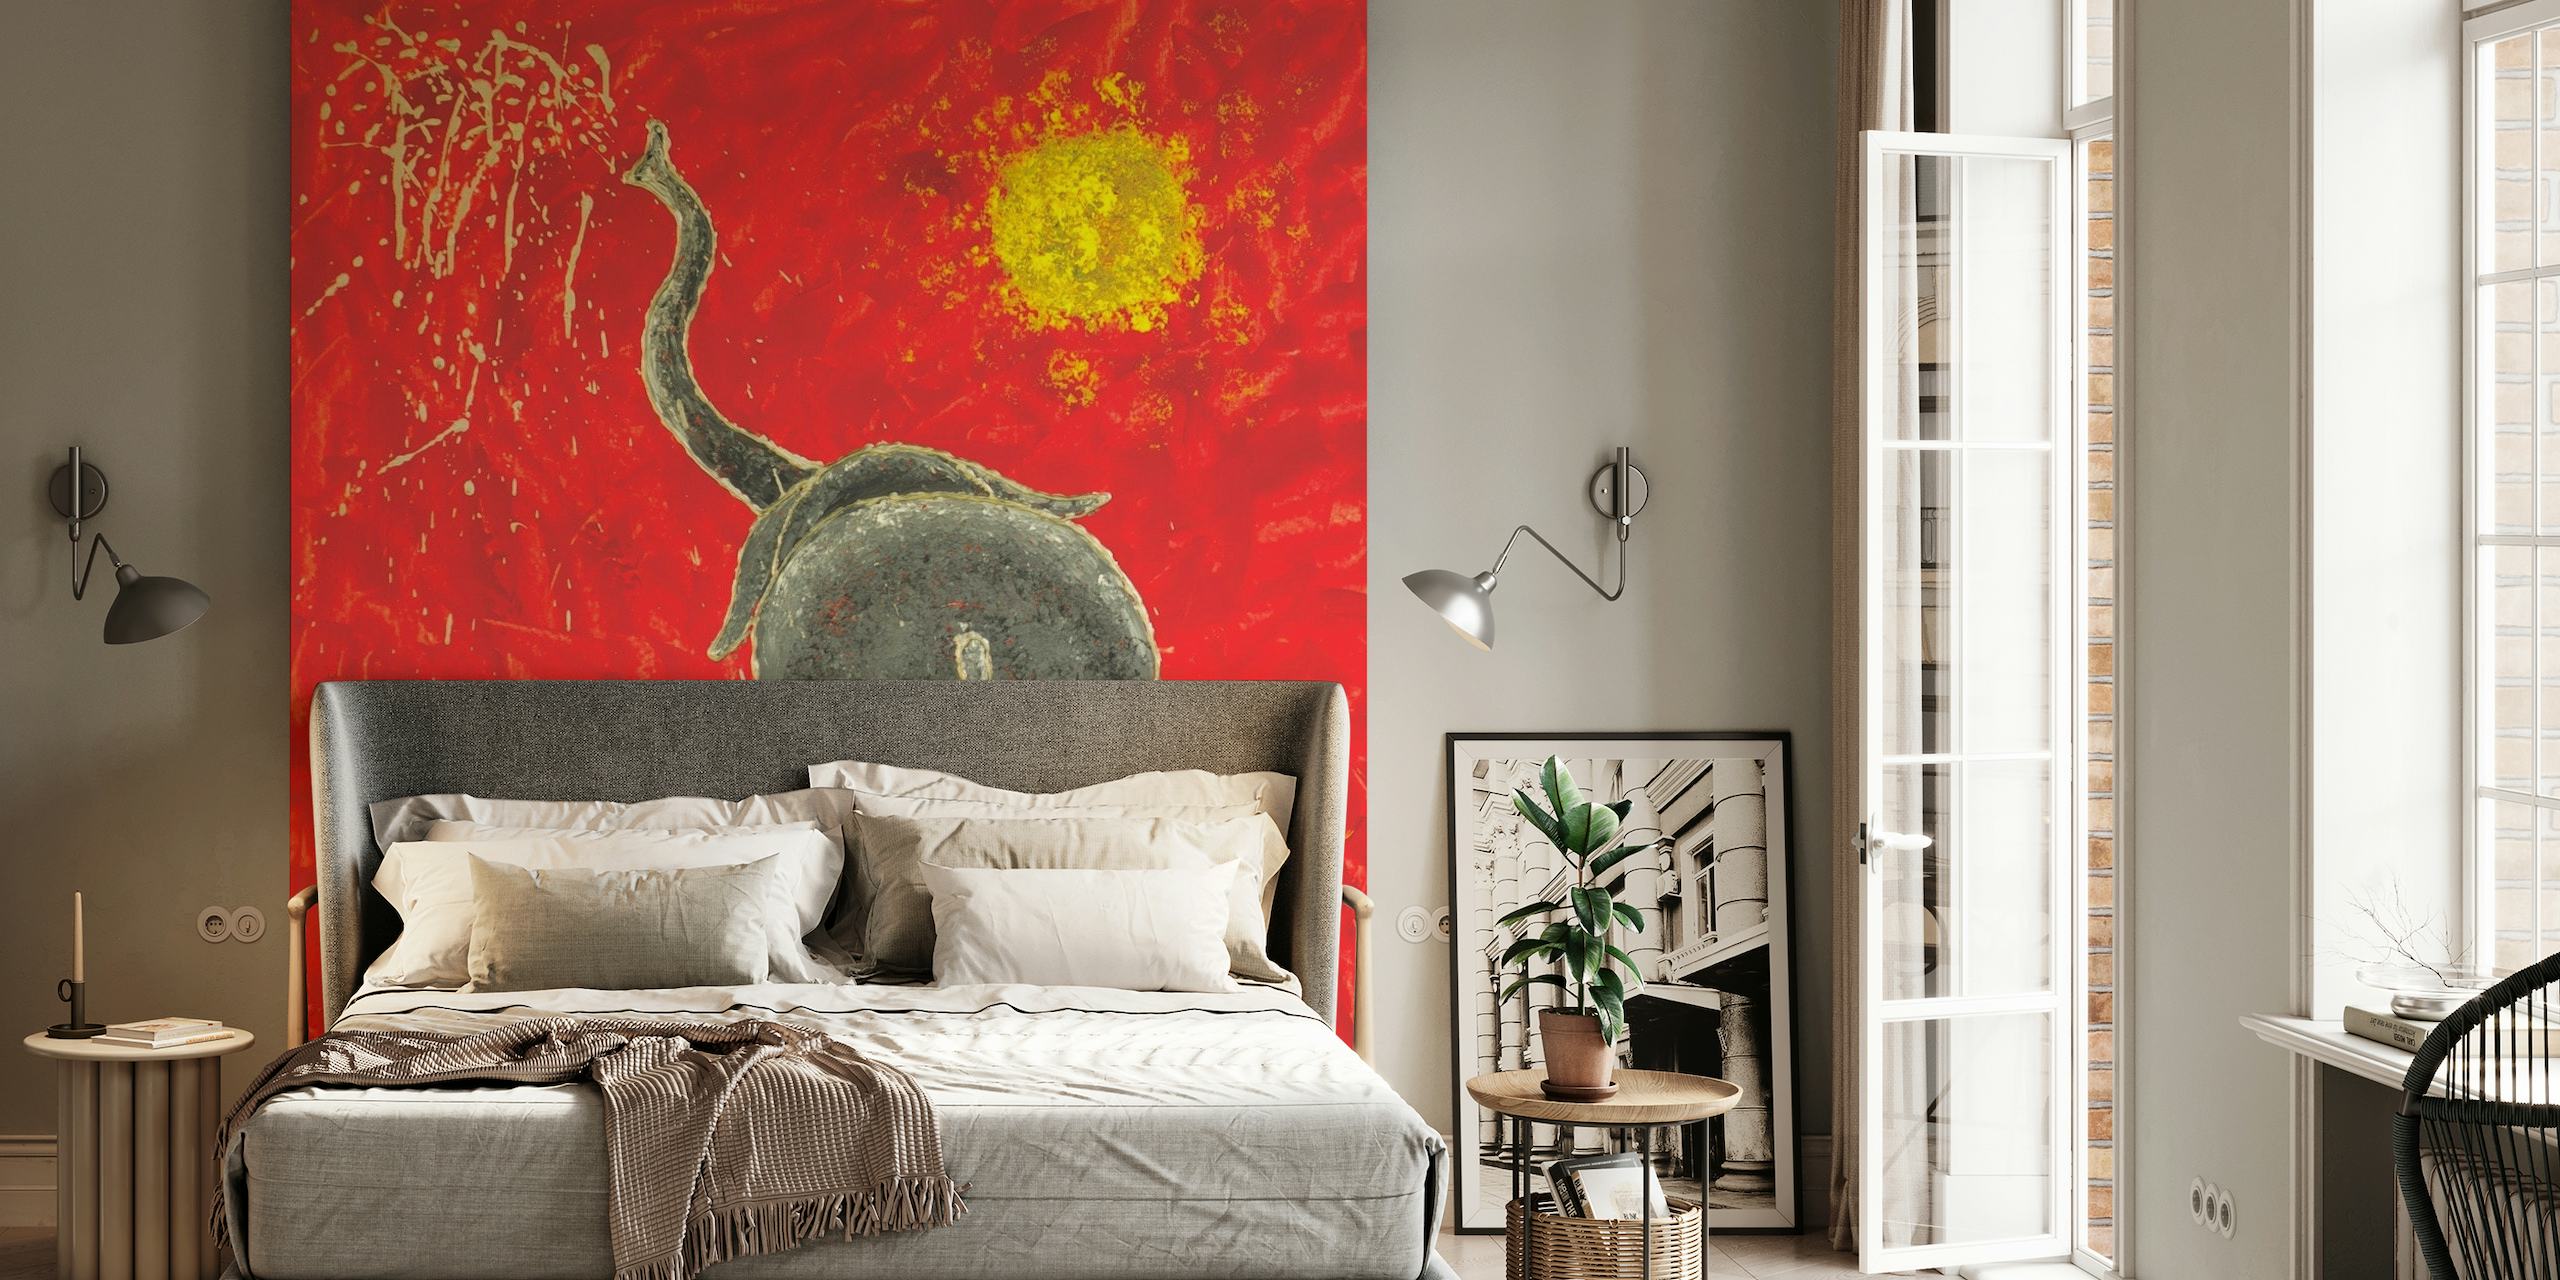 Umjetnički zidni mural razigranog slona u apstraktnom stilu s crvenom pozadinom i žutim suncem